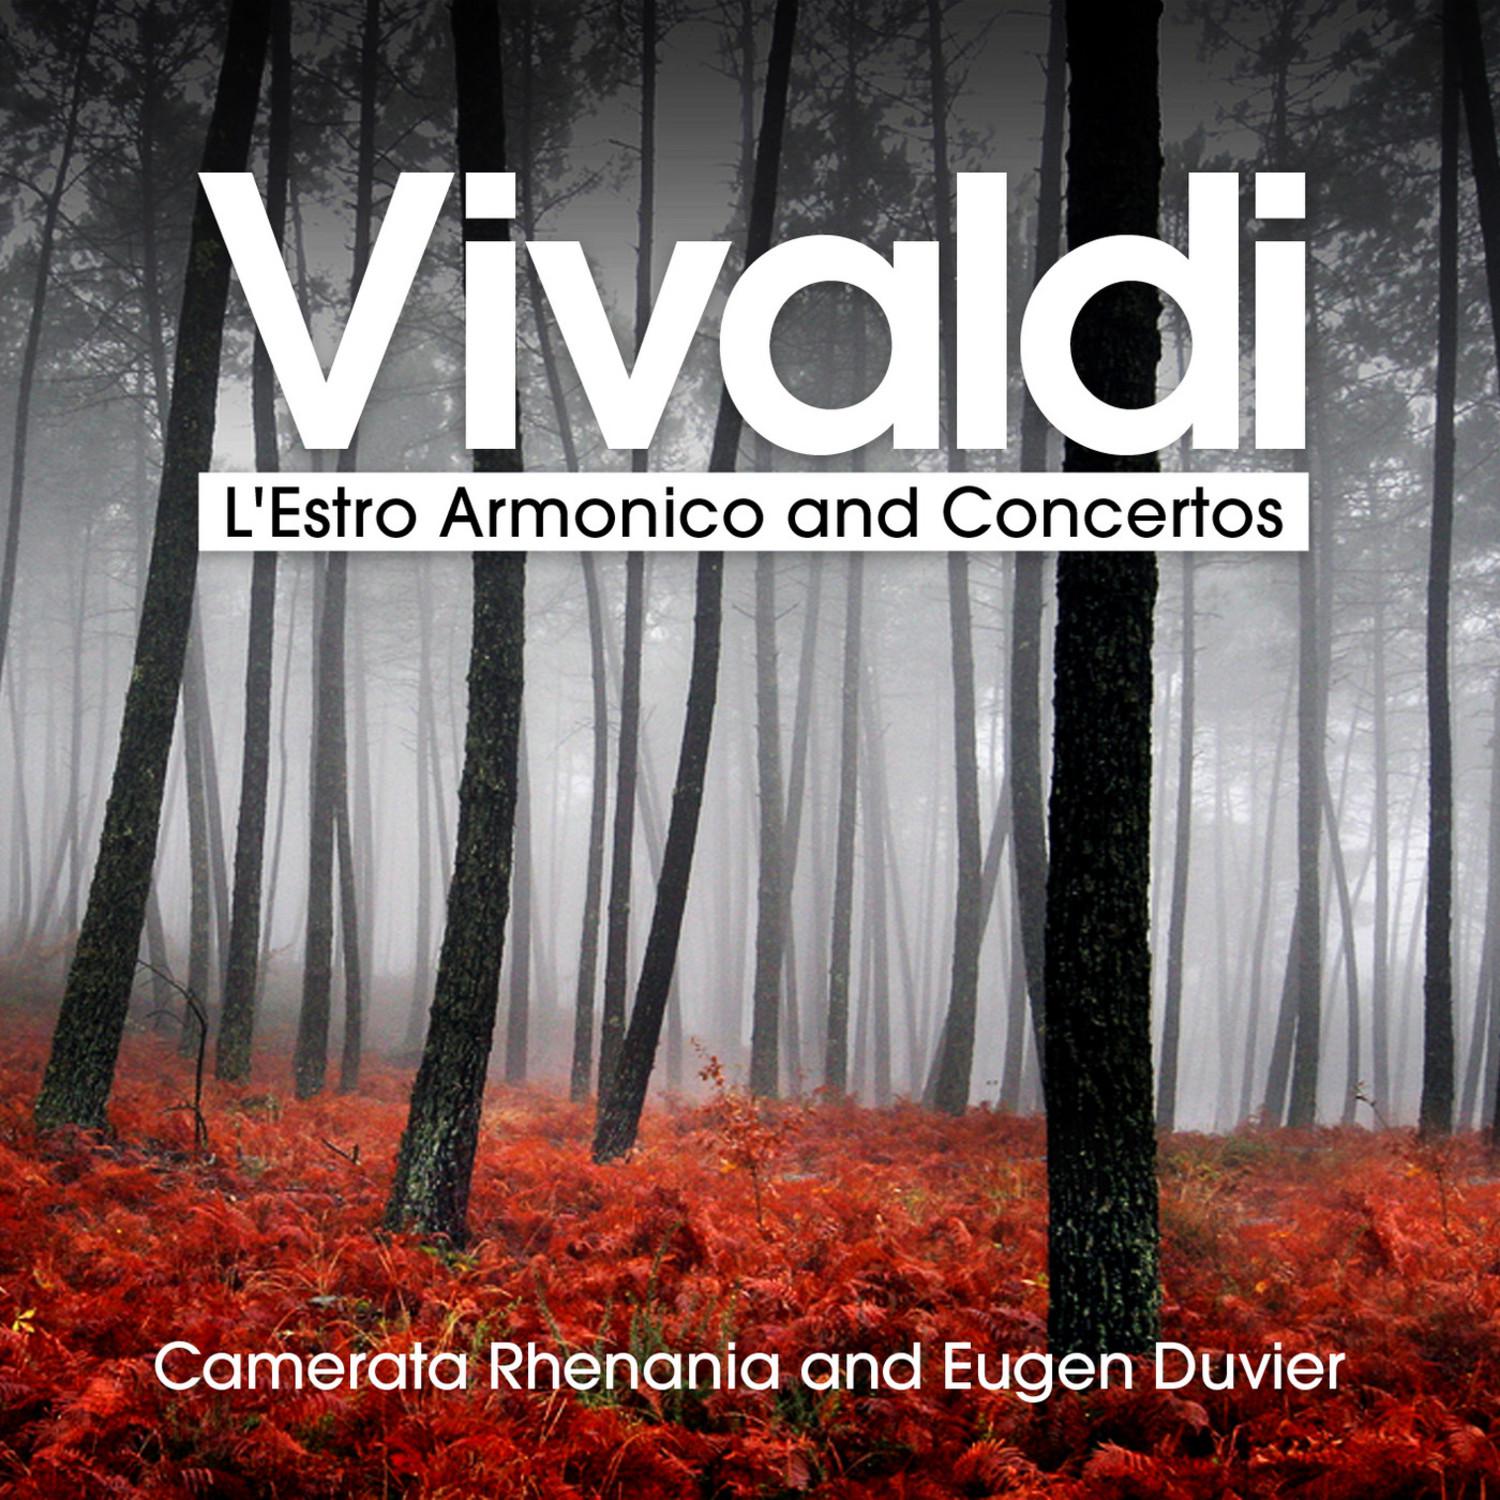 L'Estro Armonico, Op. 3 - Concerto No. 1 in D Major for 4 Violins and Strings, RV 549: I. Allegro